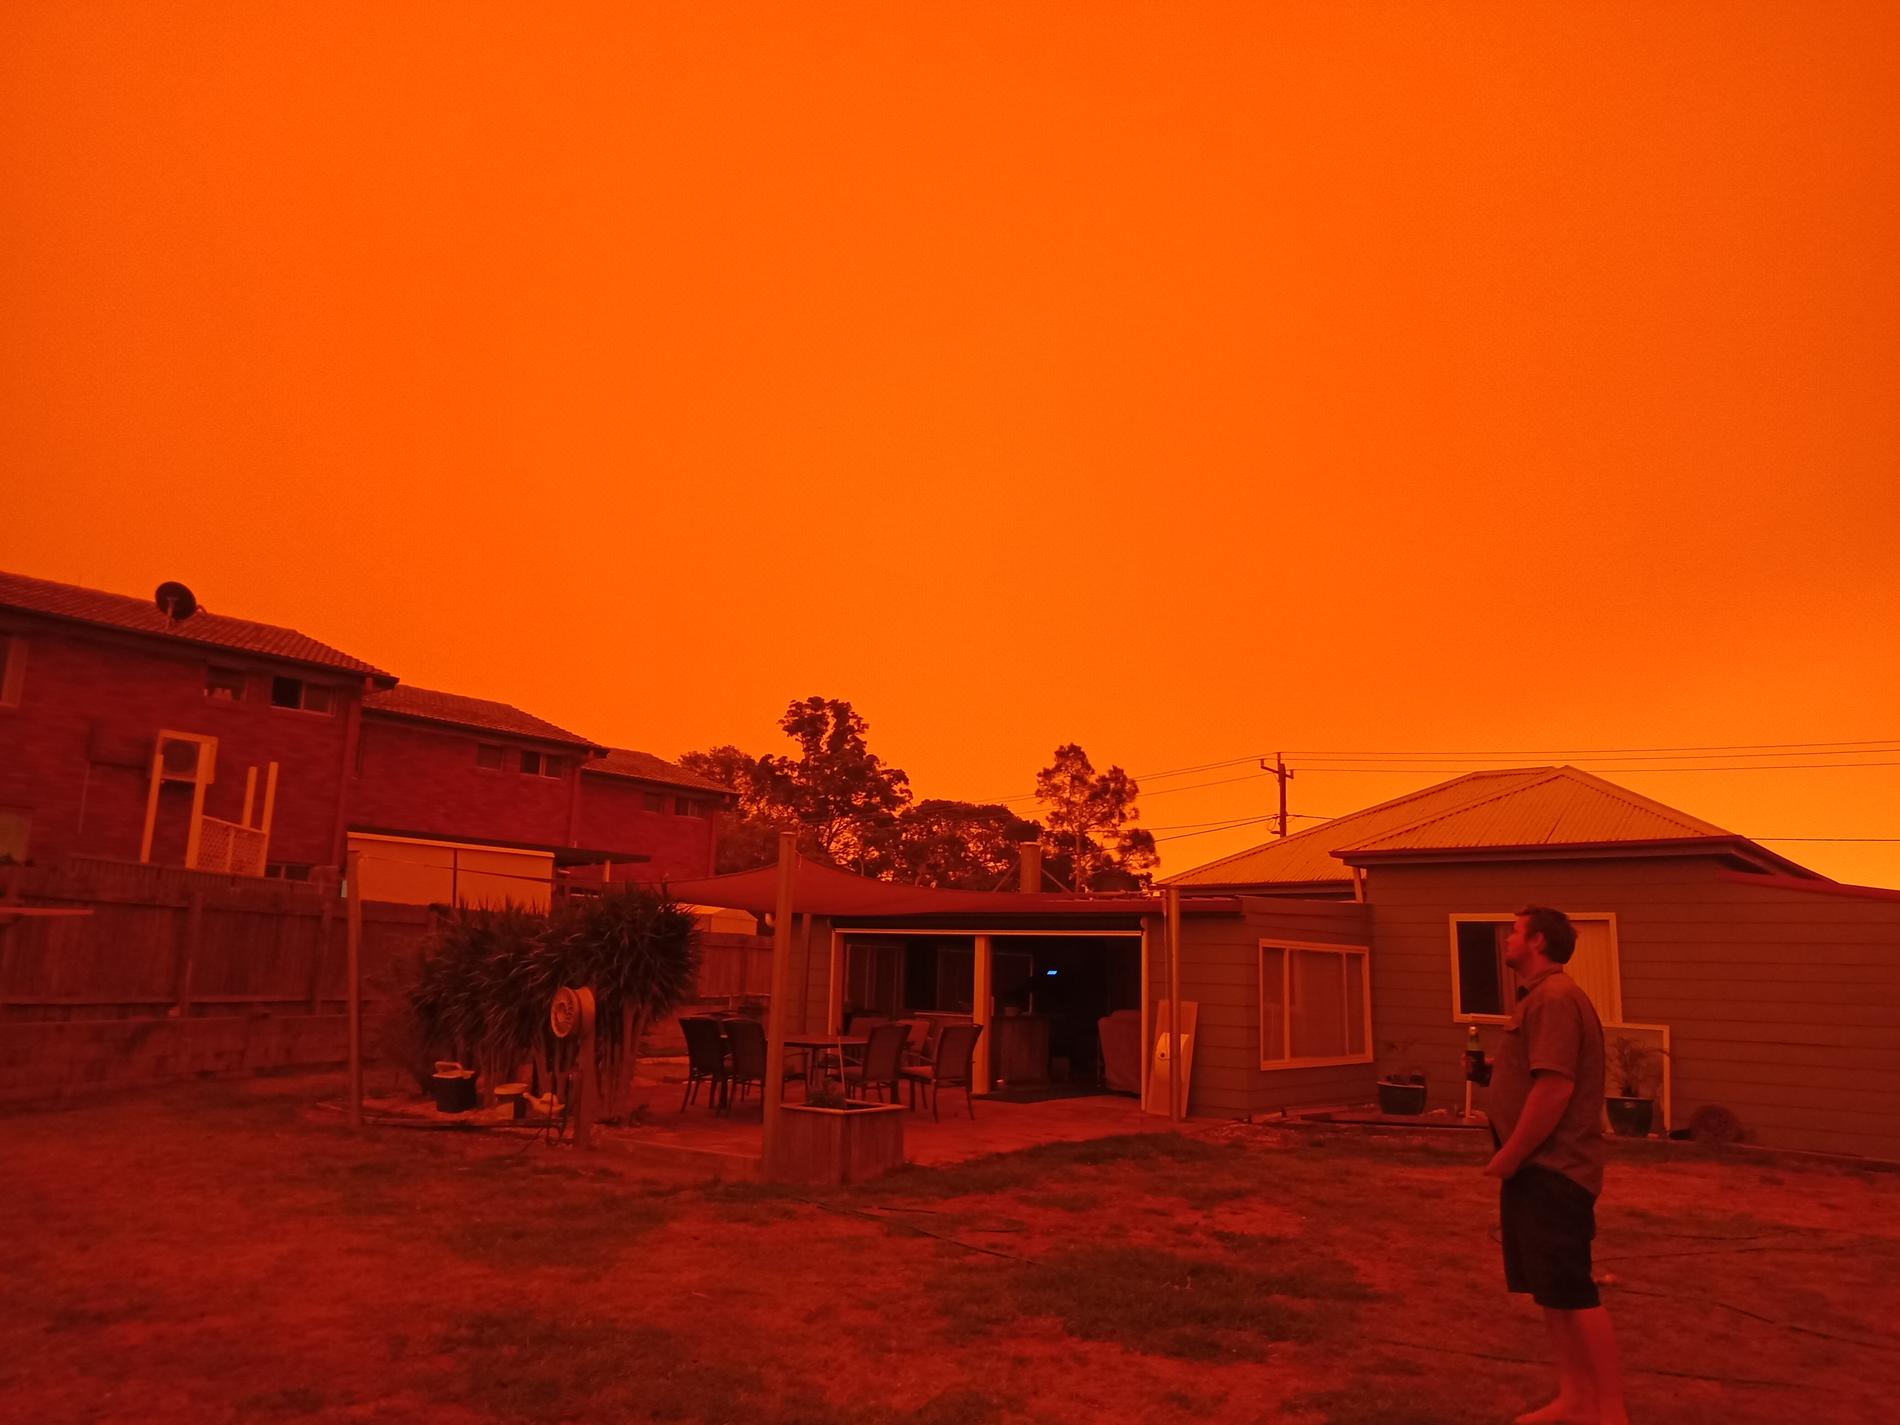 Bilderna från det rödorangea skenet i kuststaden har fått australisk media att kalla skogsbränderna apokalyptiska. 